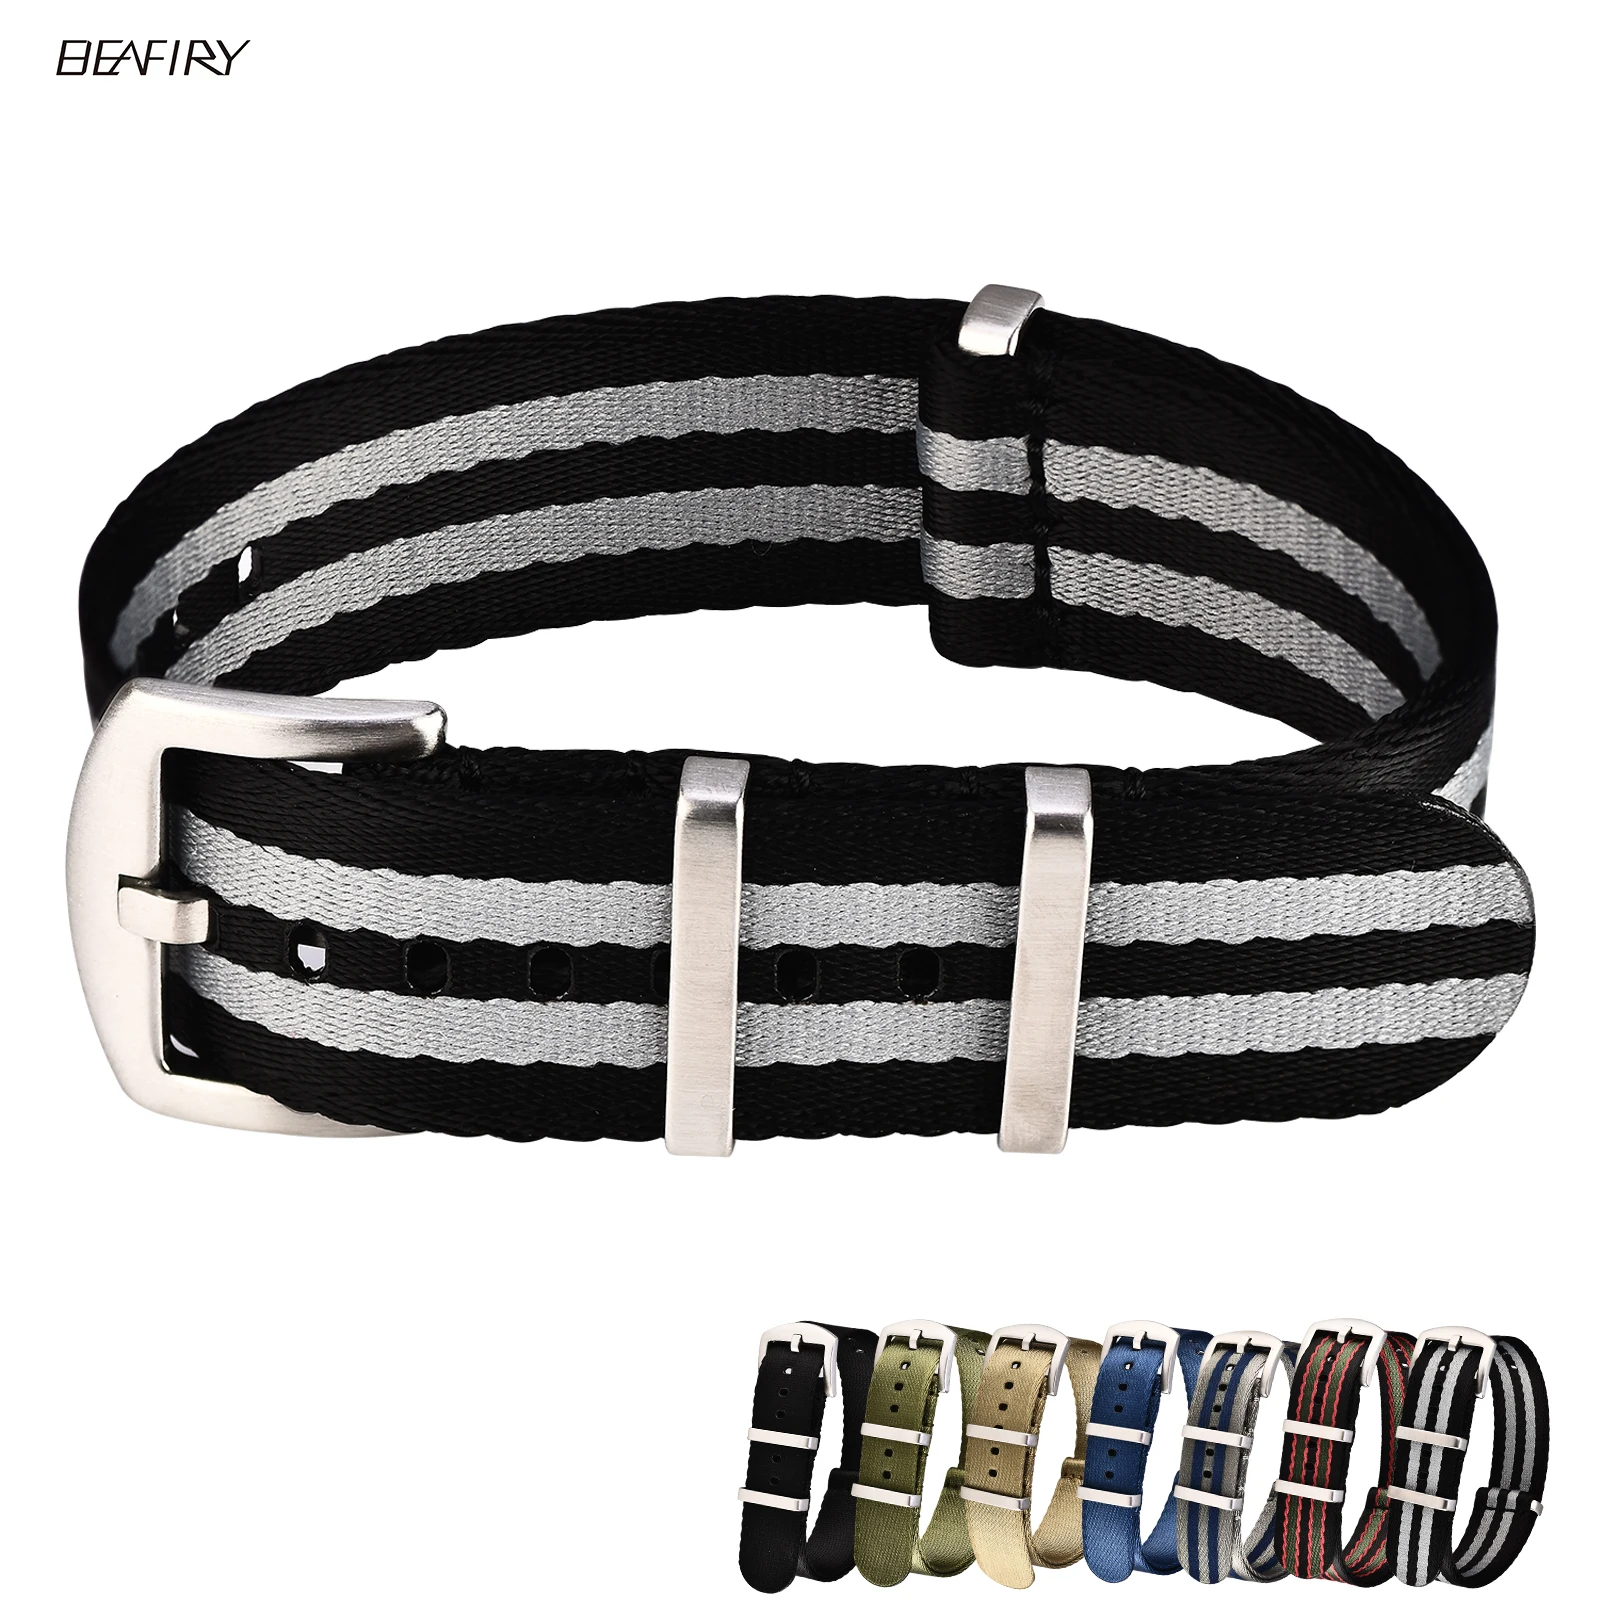 BEAFIRY Nato cinturino di sicurezza cinturino in Nylon 20mm 22mm Zulu cinturini per orologi cinturini sportivi per huawei samsung nero grigio blu cachi